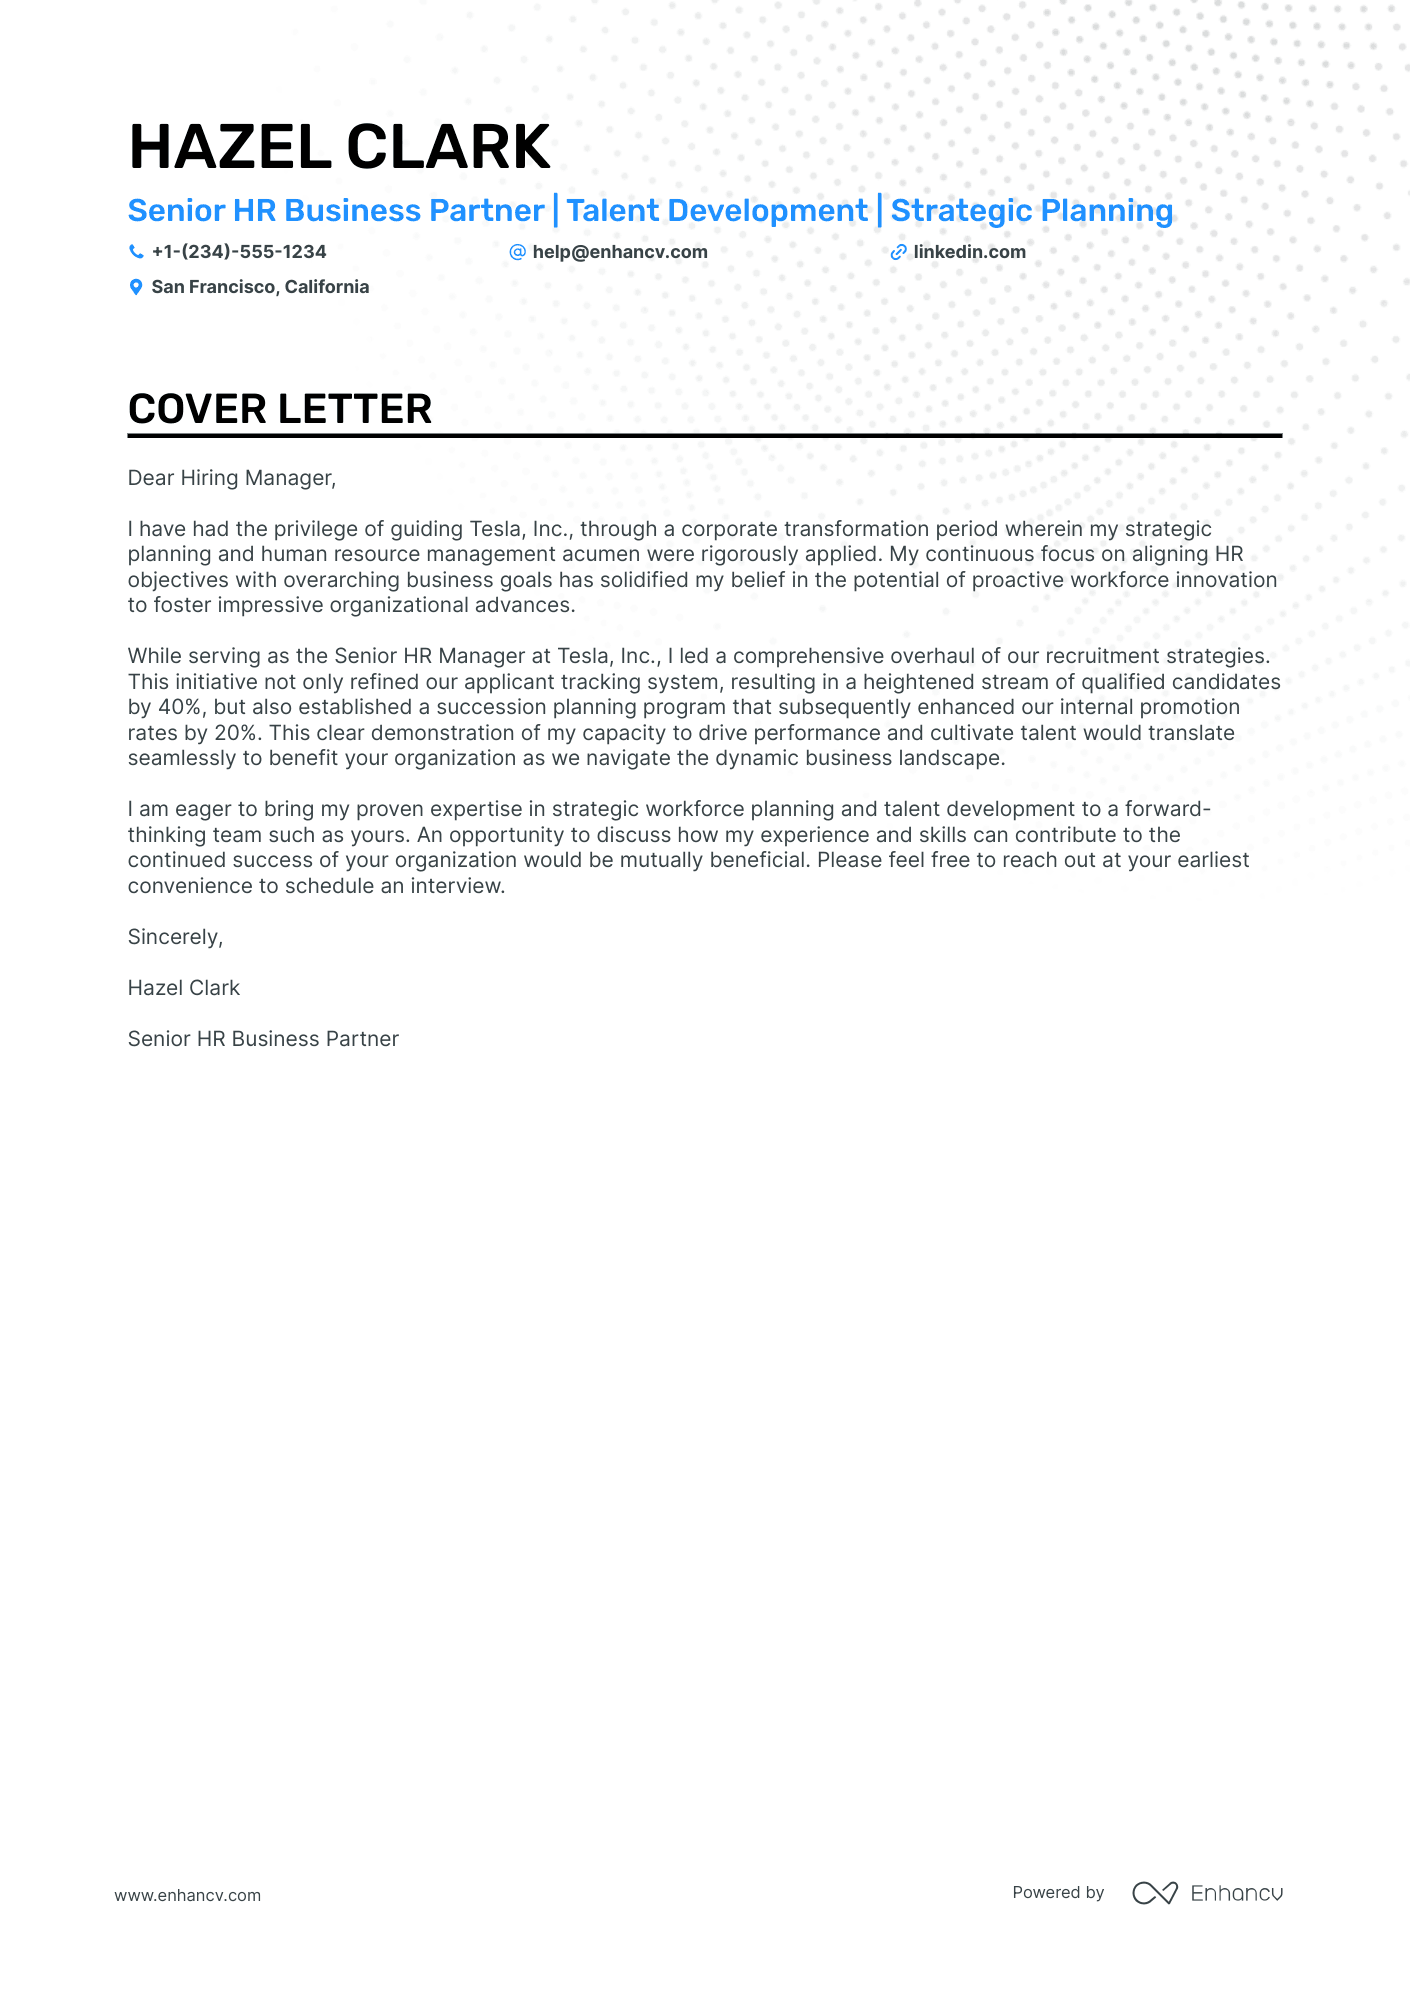 HR Business Partner cover letter